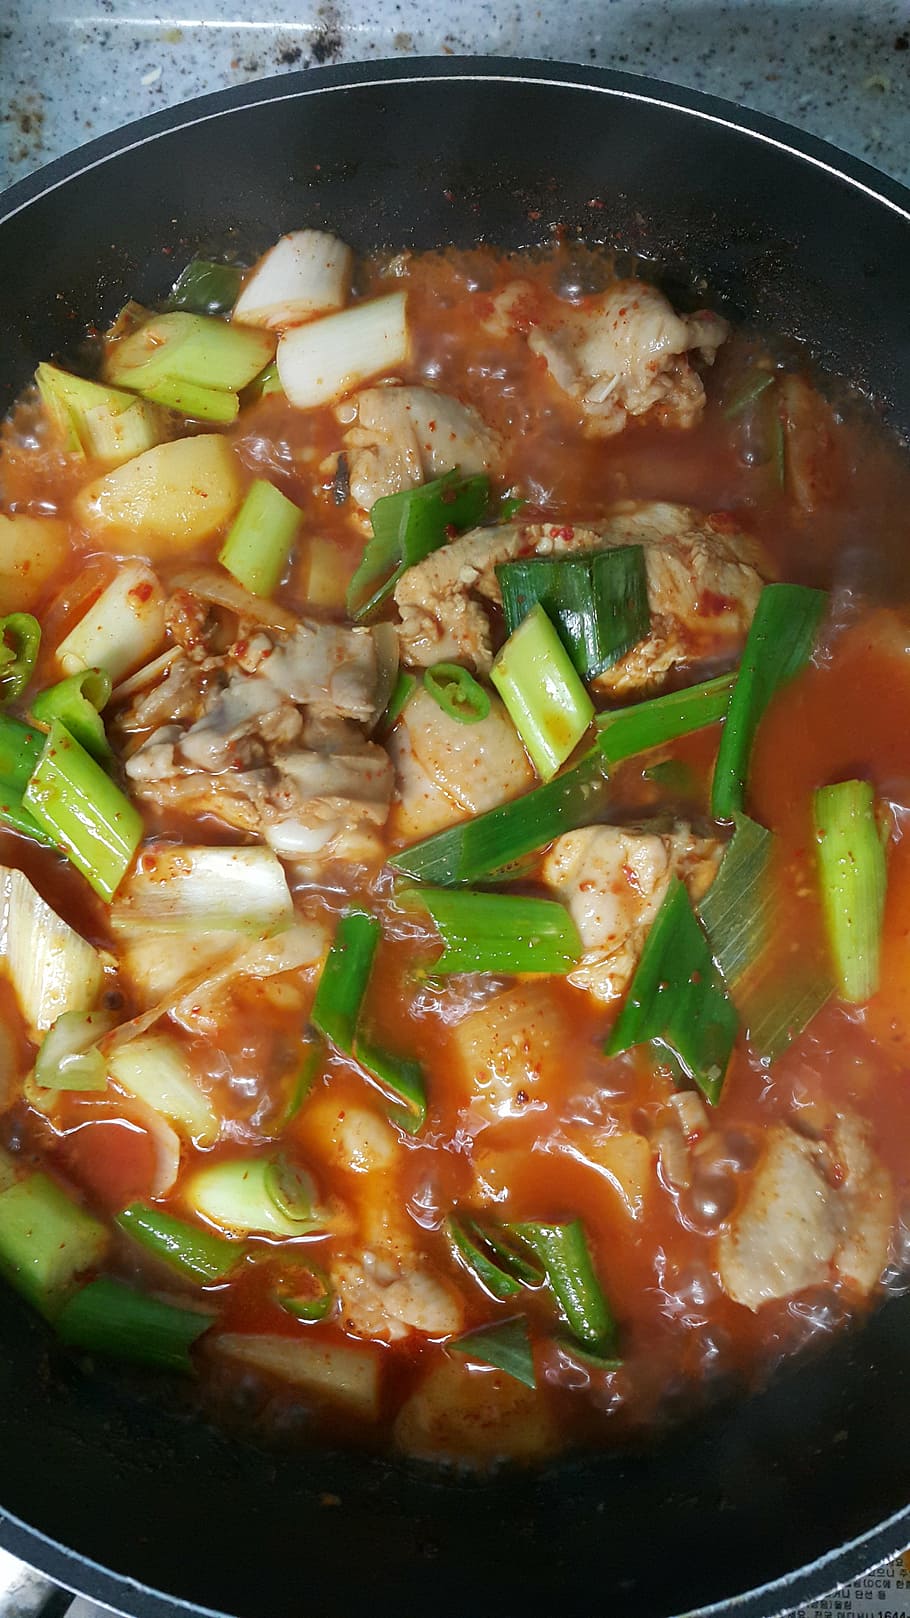 kimchi, comida, refeições, comida e bebida, vegetais, ambiente interno, alimentação saudável, equipamentos domésticos, utensílios de cozinha, bem-estar